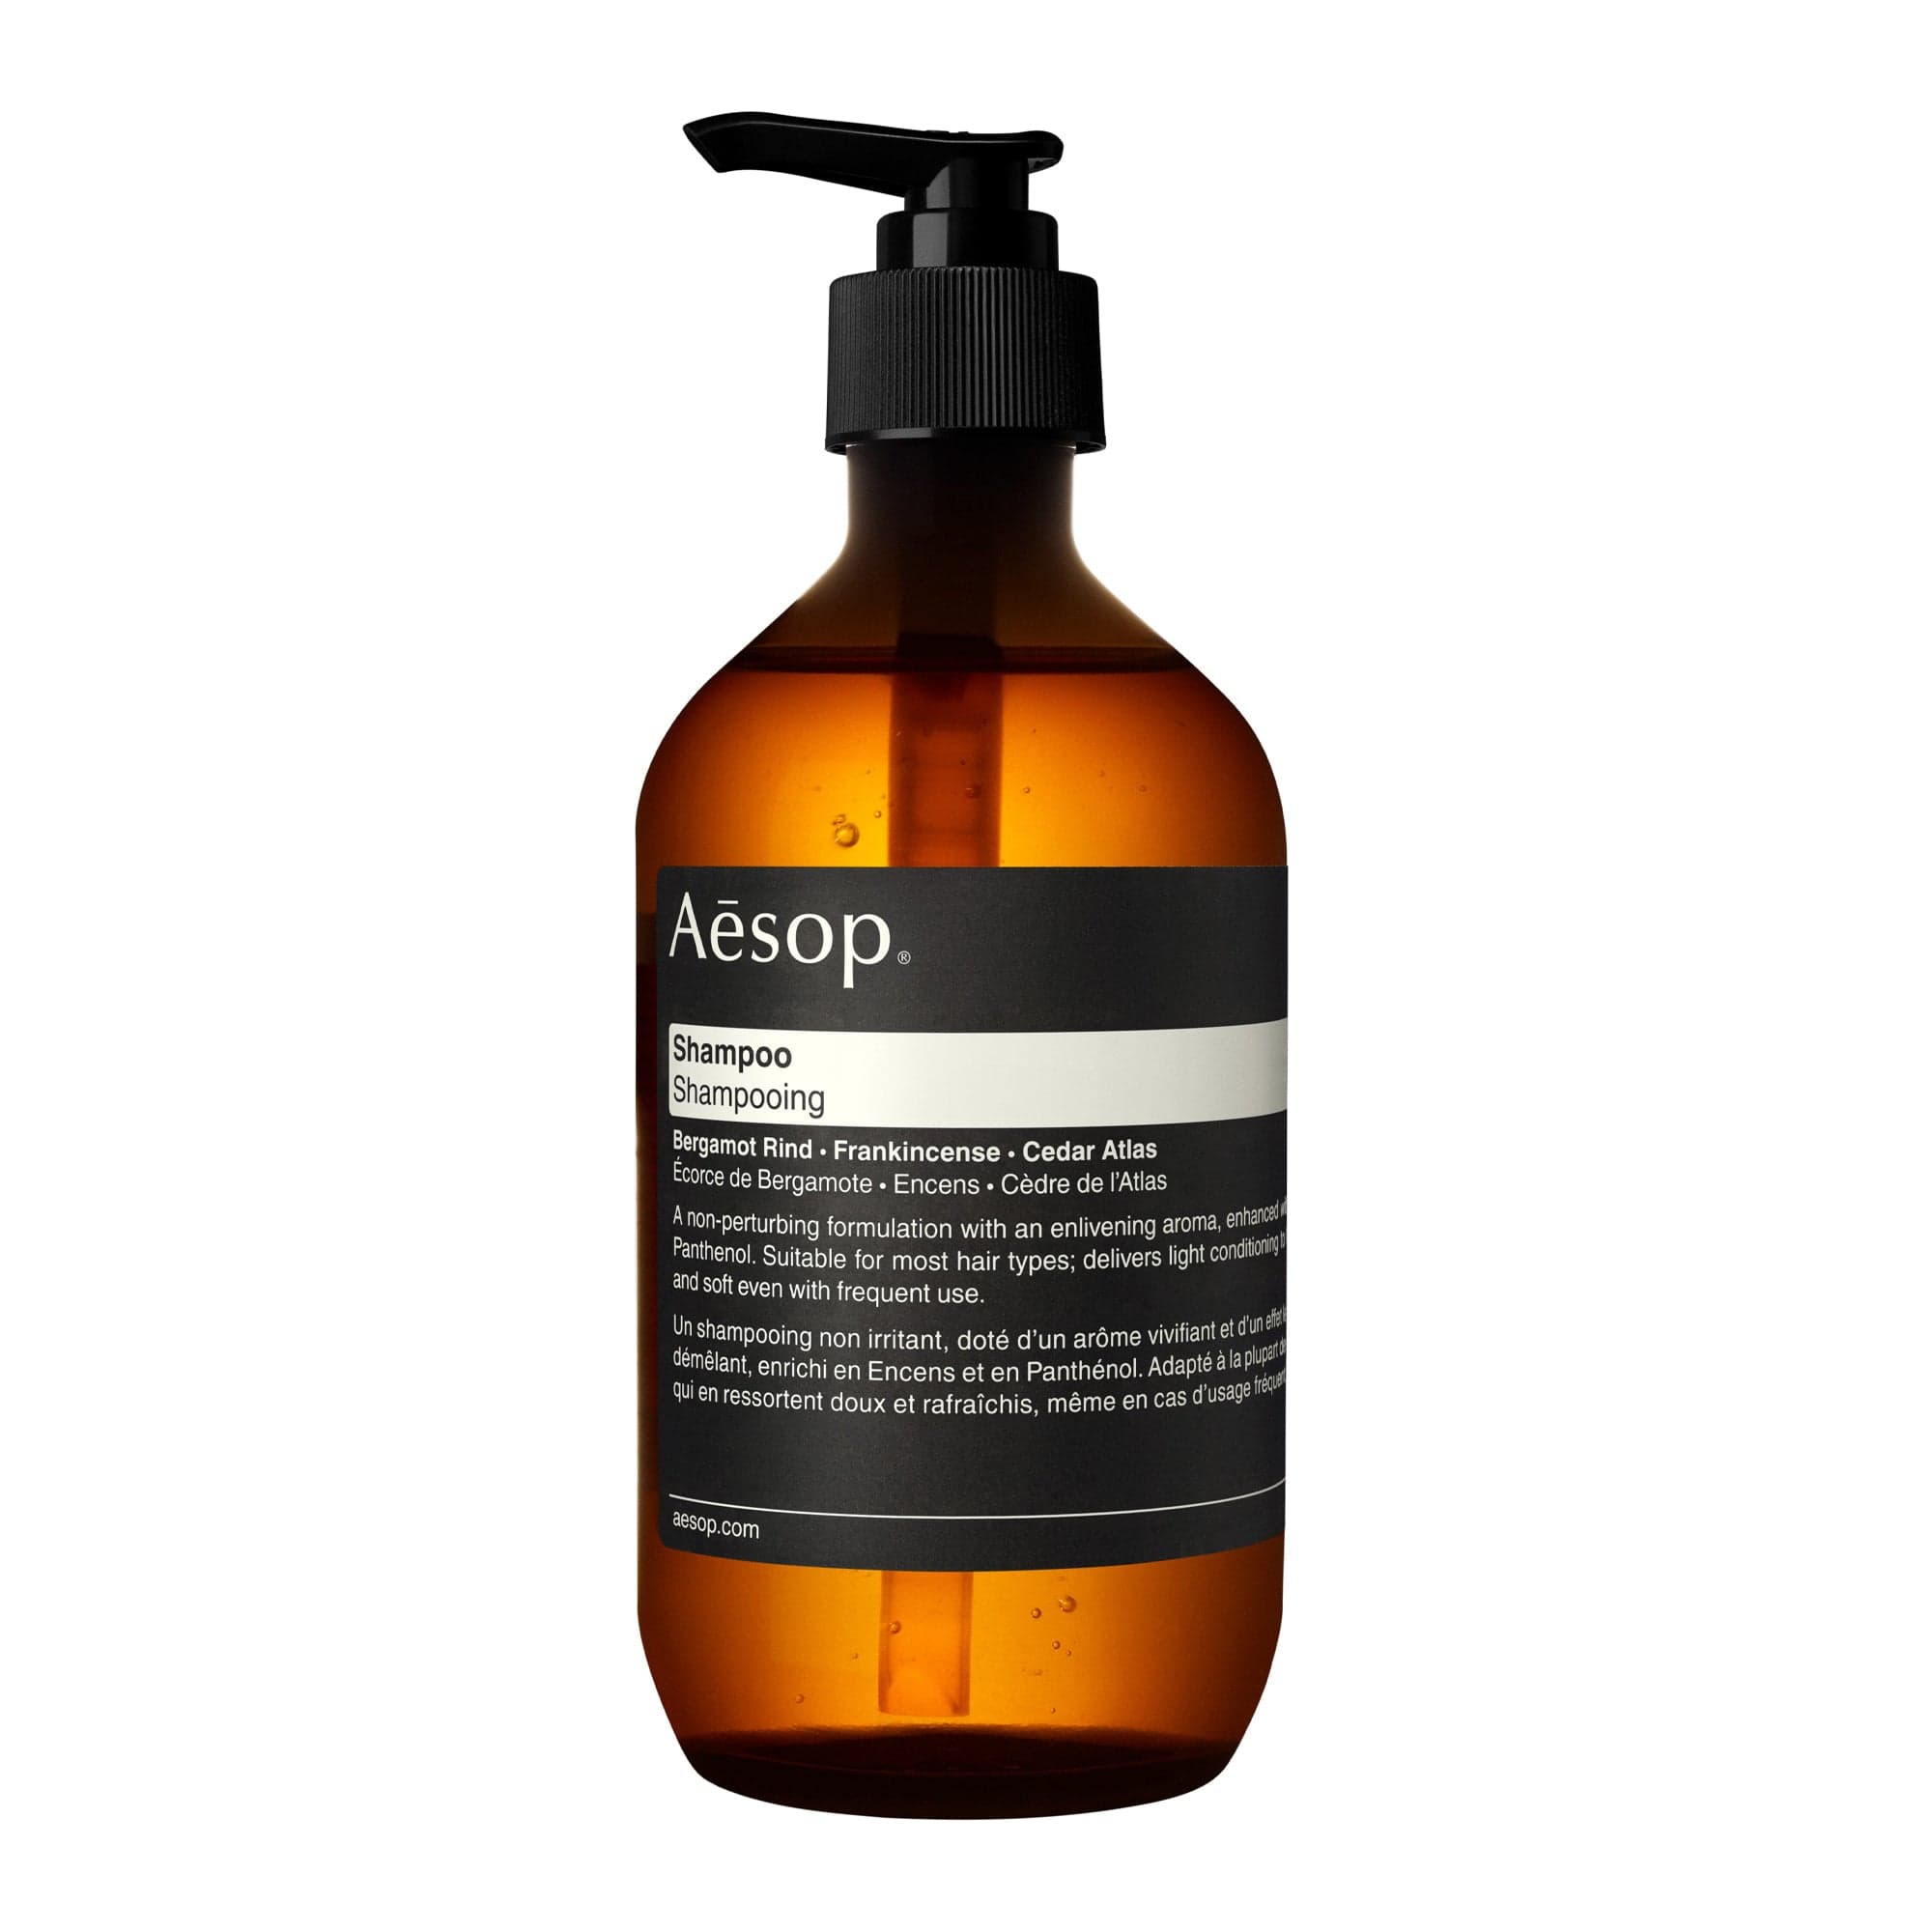 Shampoo de Aesop Champú